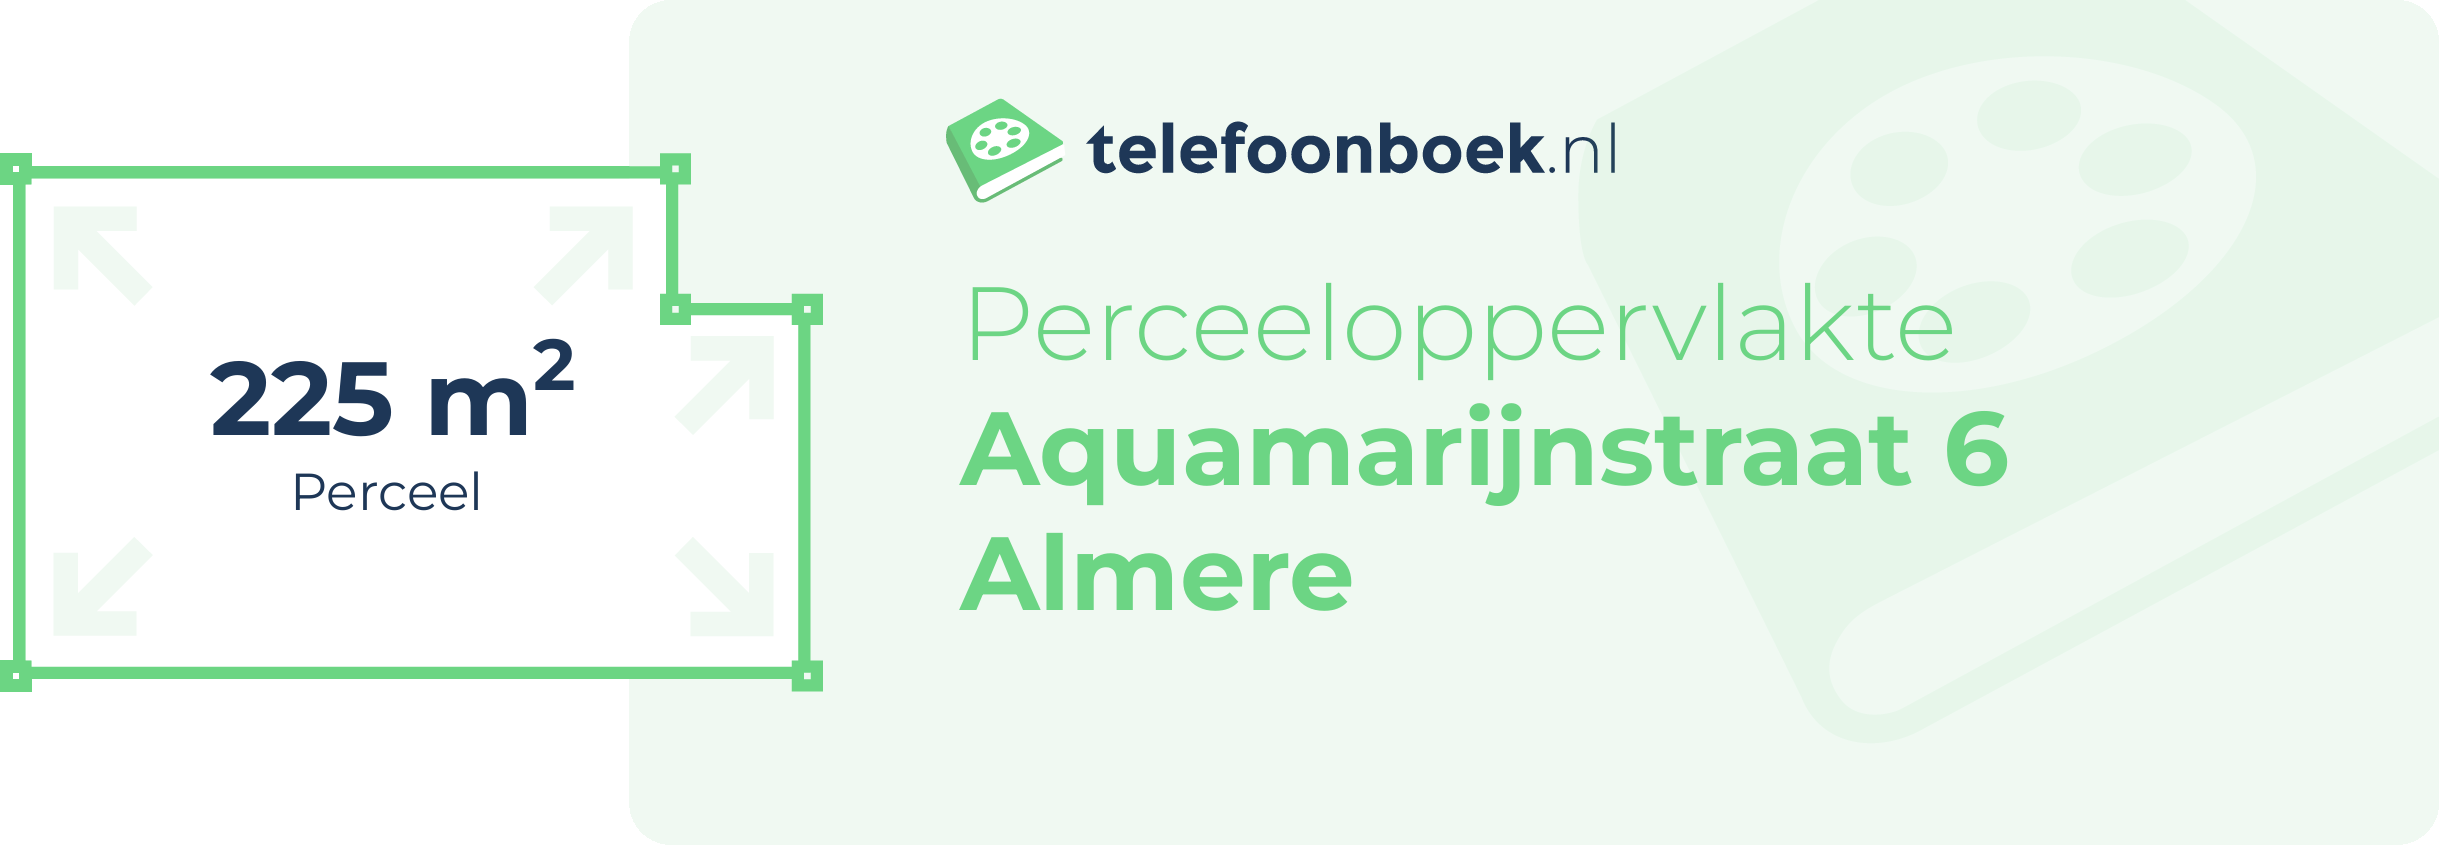 Perceeloppervlakte Aquamarijnstraat 6 Almere